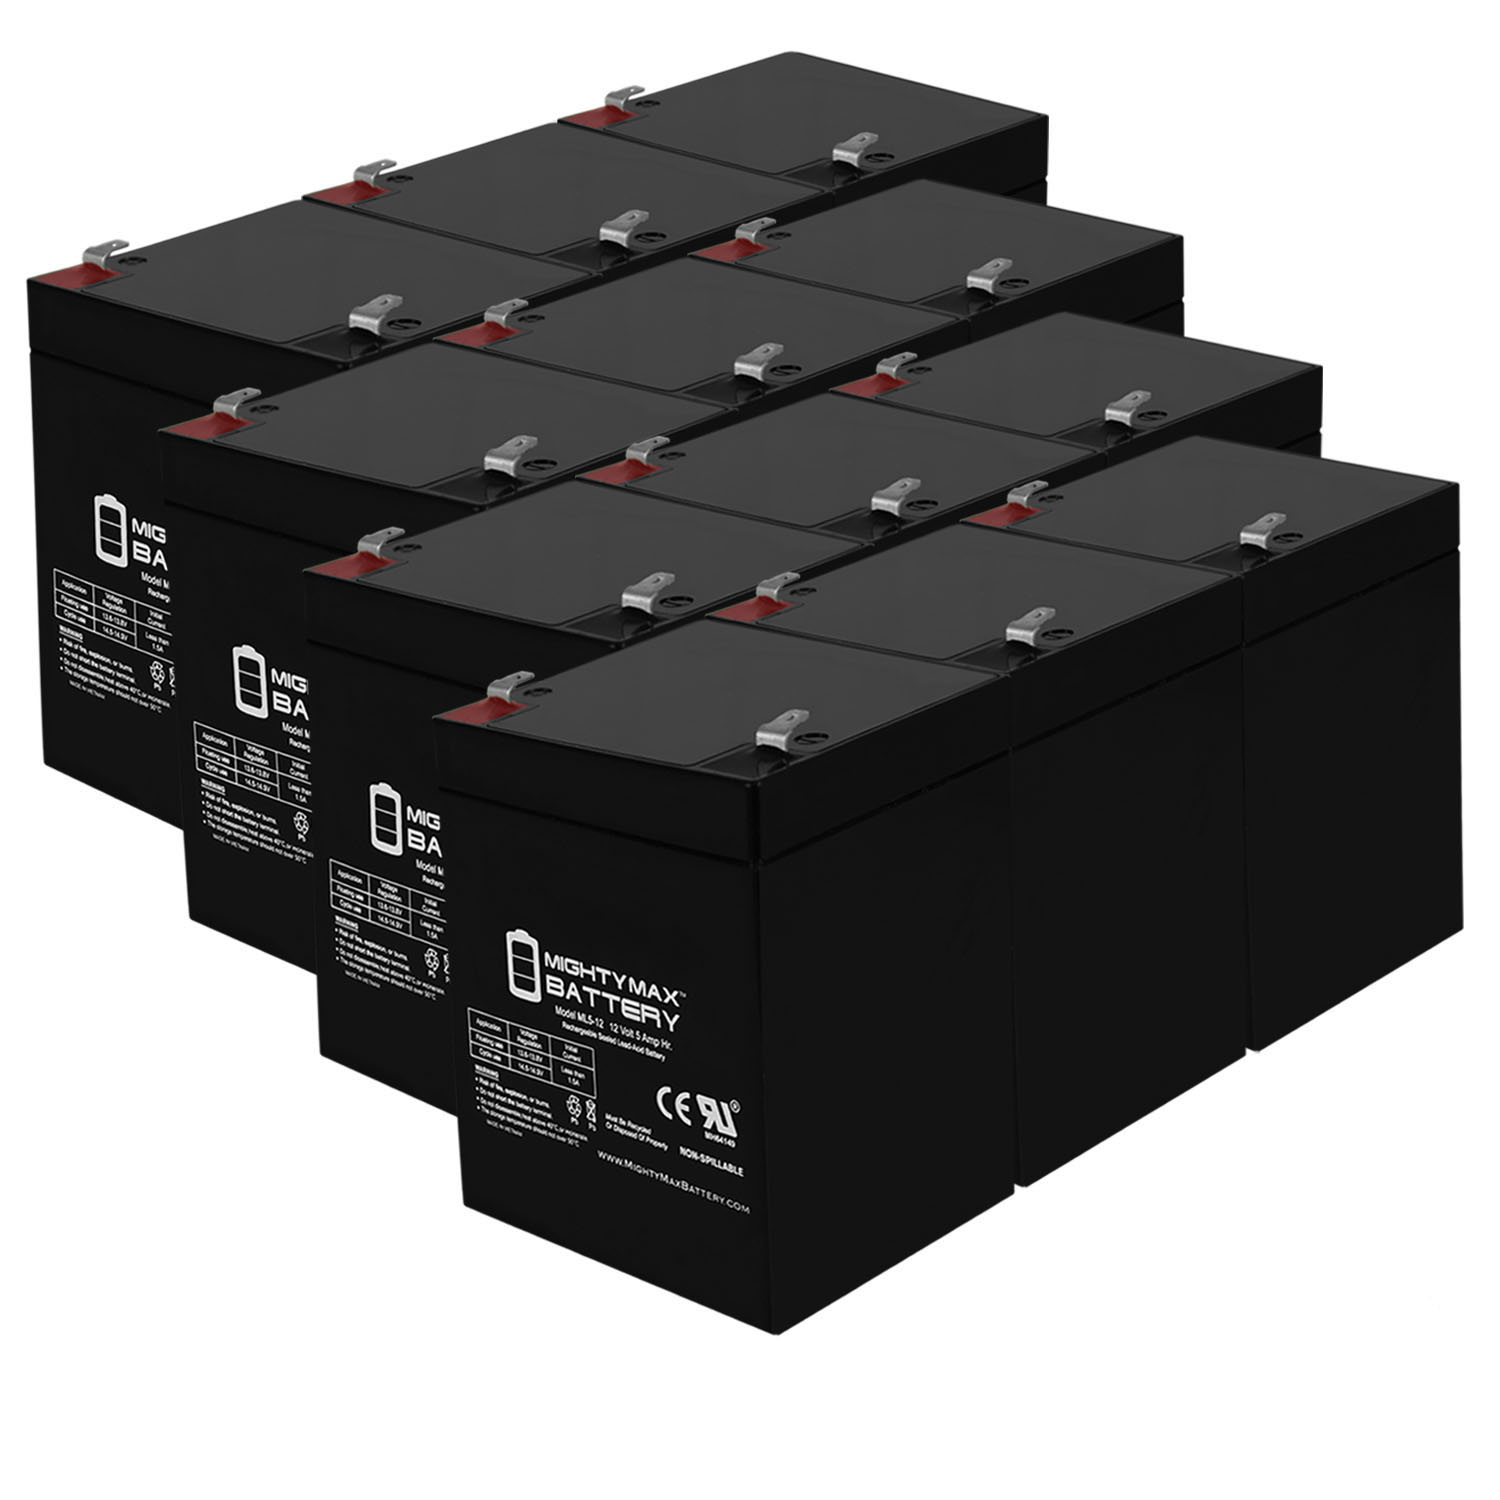 12V 5AH SLA Replacement Battery for BB SHR7-12 - 12 Pack